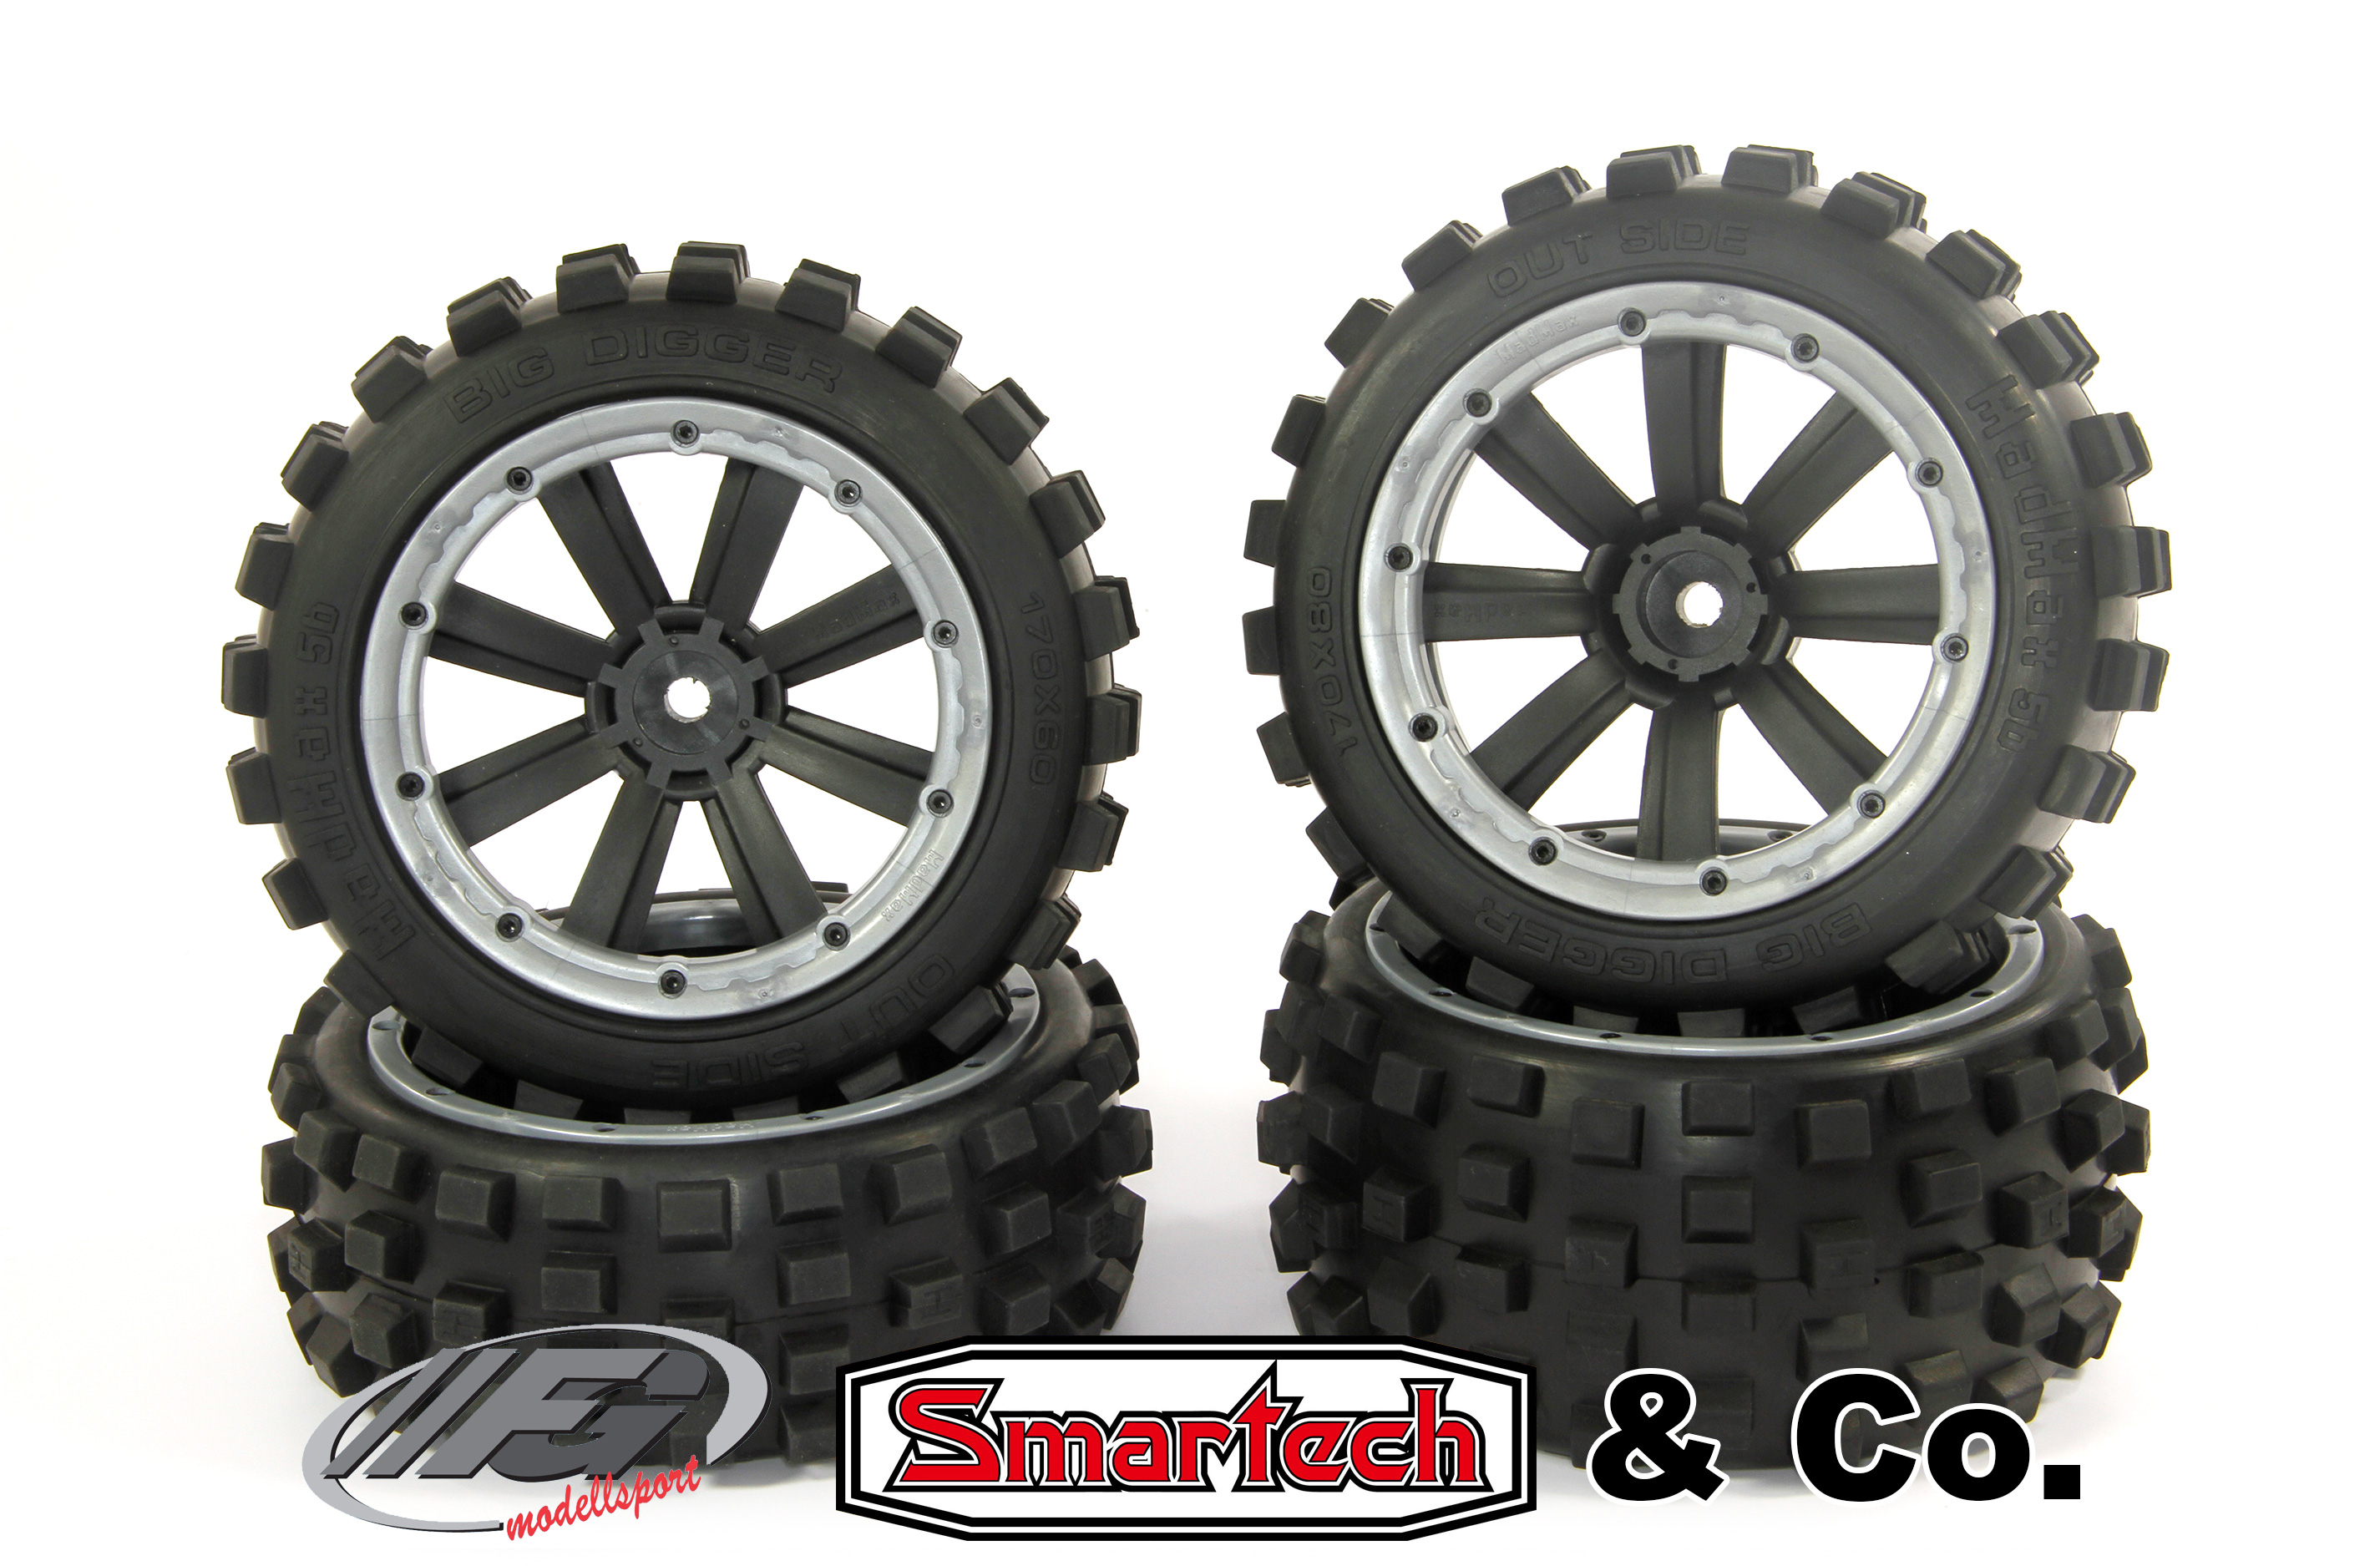 y1401/01 MadMax BIG DIGGER 170x80/x60 Reifen für FG/Smartech & Co (18 mm Vierkant) Angebot